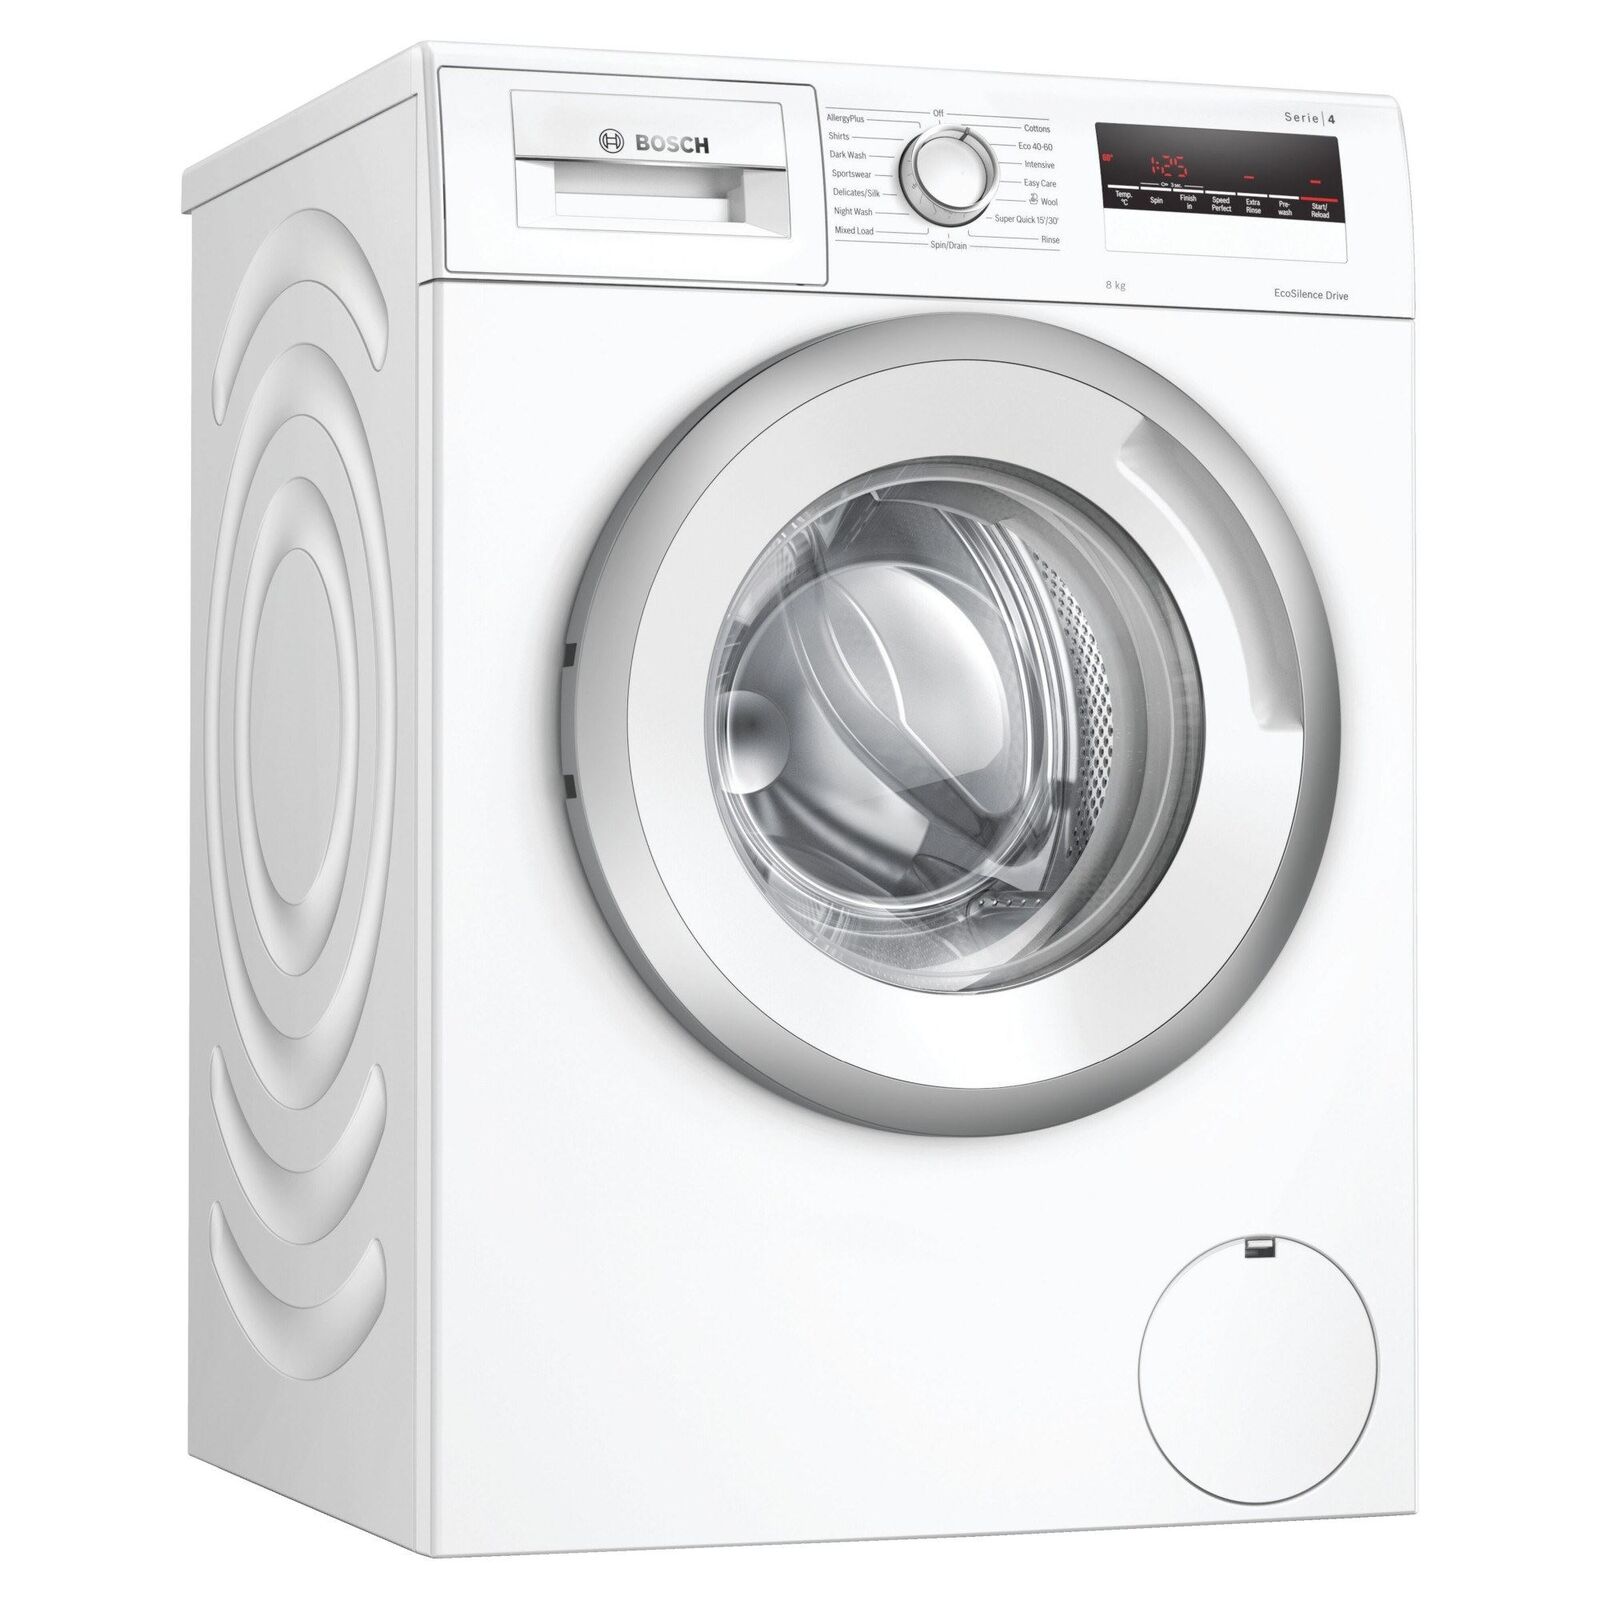 Bosch Series 4 washing machine, 8kg load